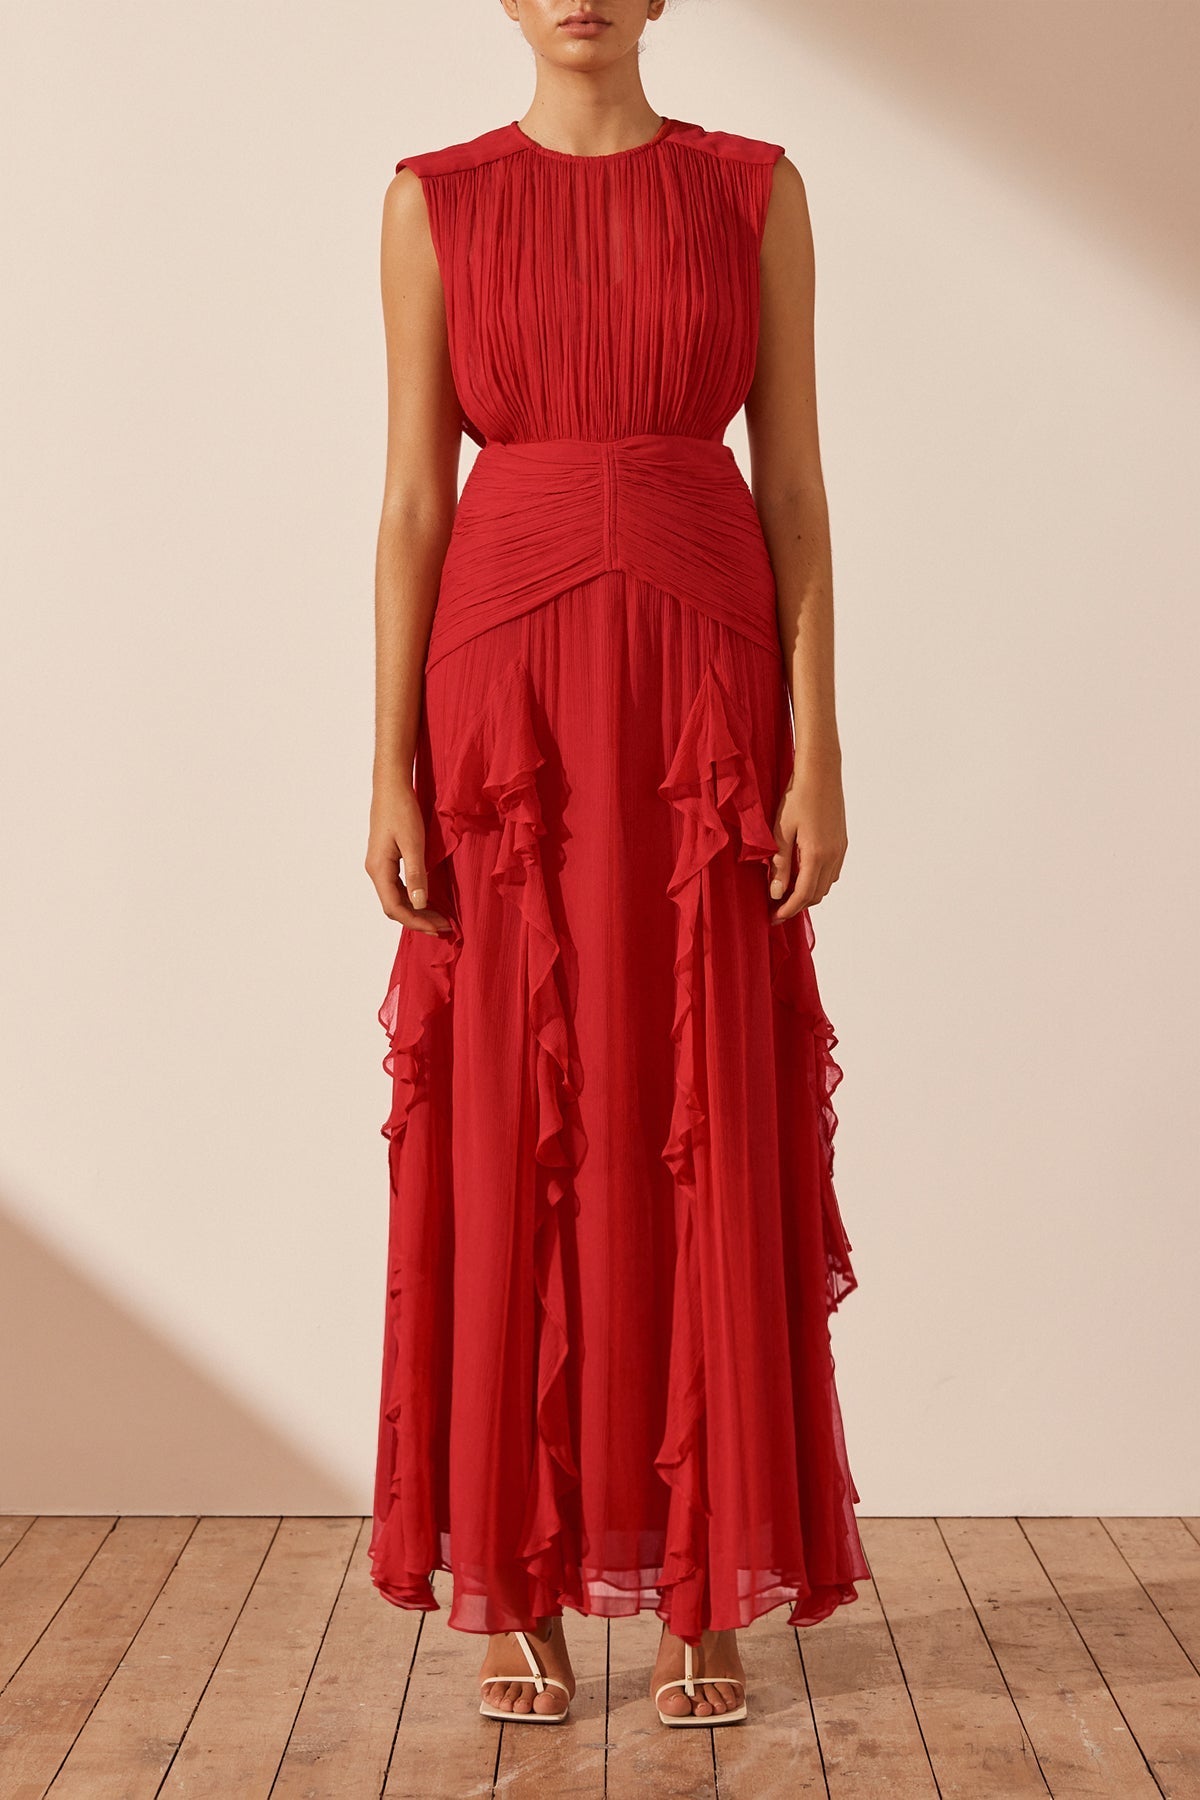 Sheer Ruffled Maxi Dress In Red  Maxi dress, Ruffled maxi dress